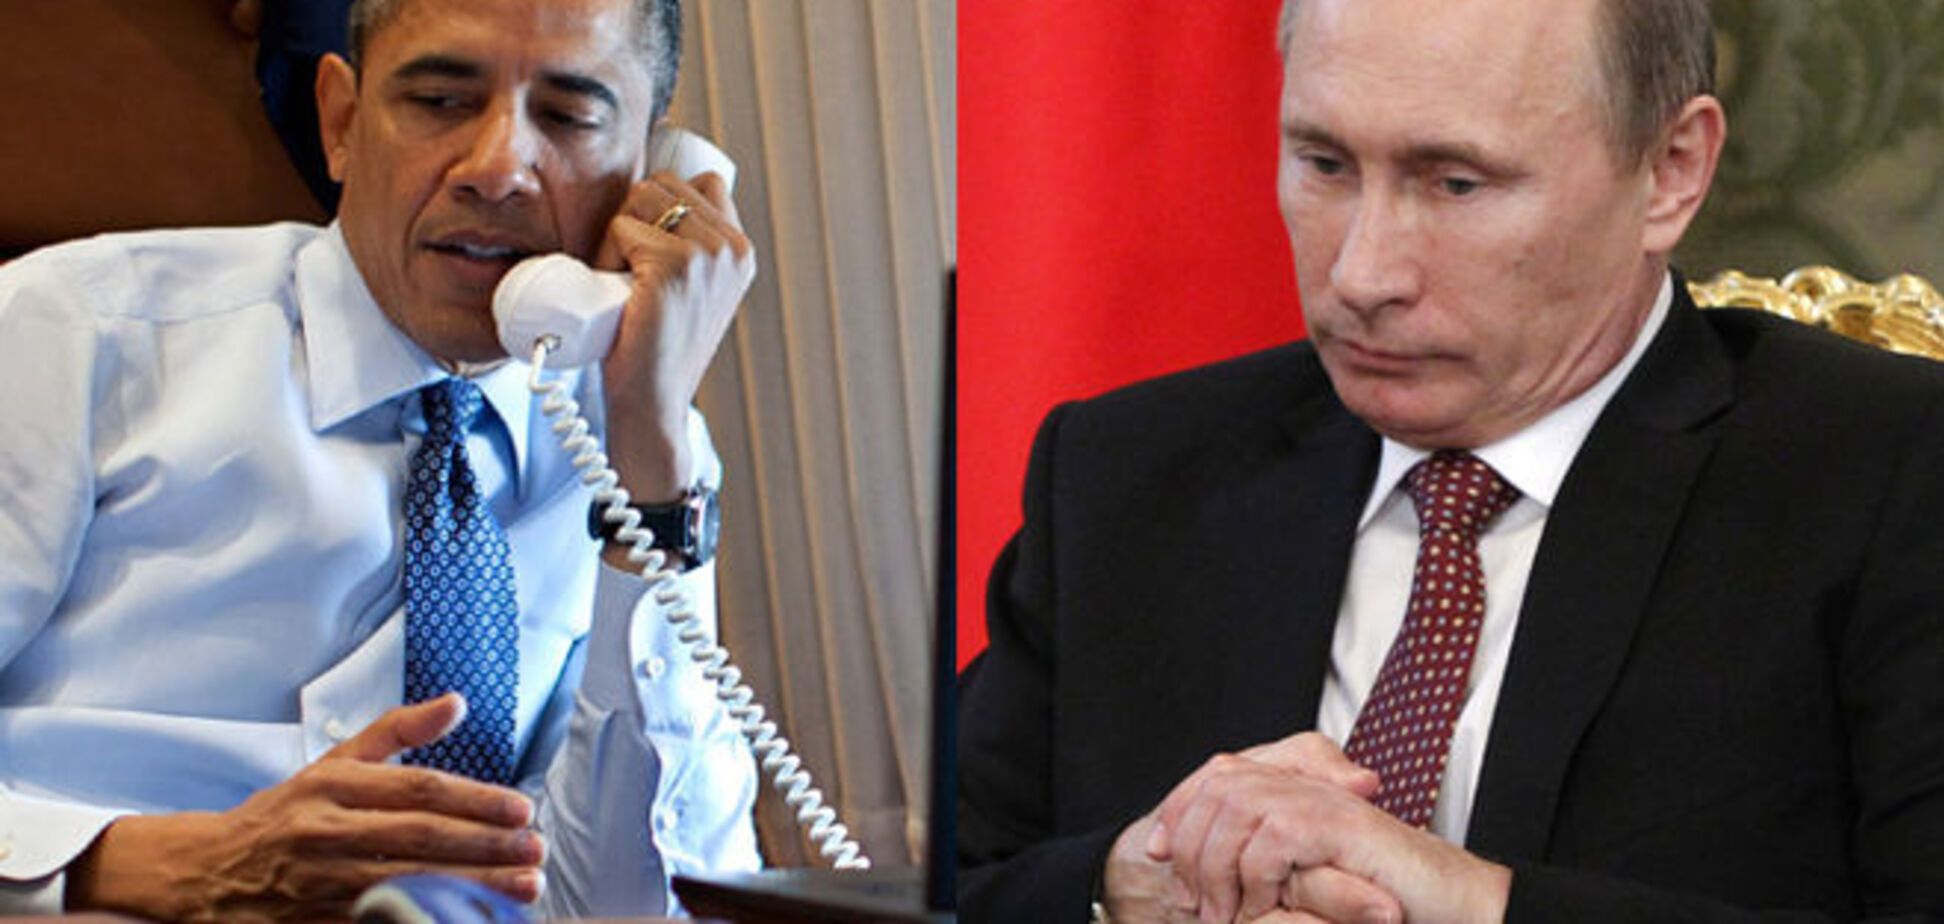 Що сказав Обама Путіну: три питання дипломатам про здачу України